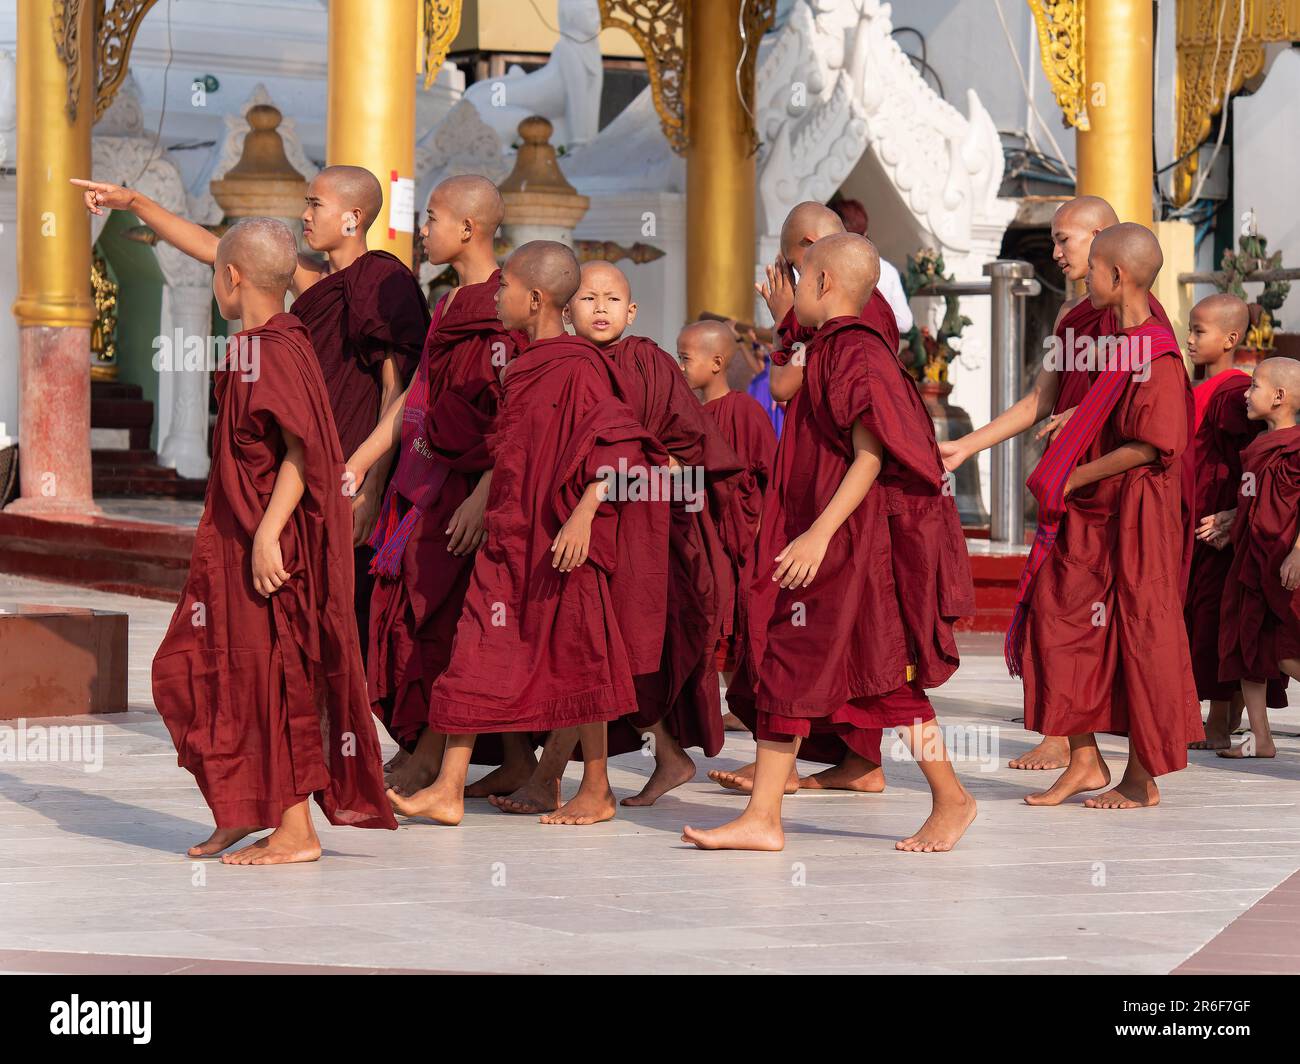 Groupe de jeunes moines à la Pagode Shwedagon, le monument le plus célèbre de Yangon, au Myanmar. Banque D'Images